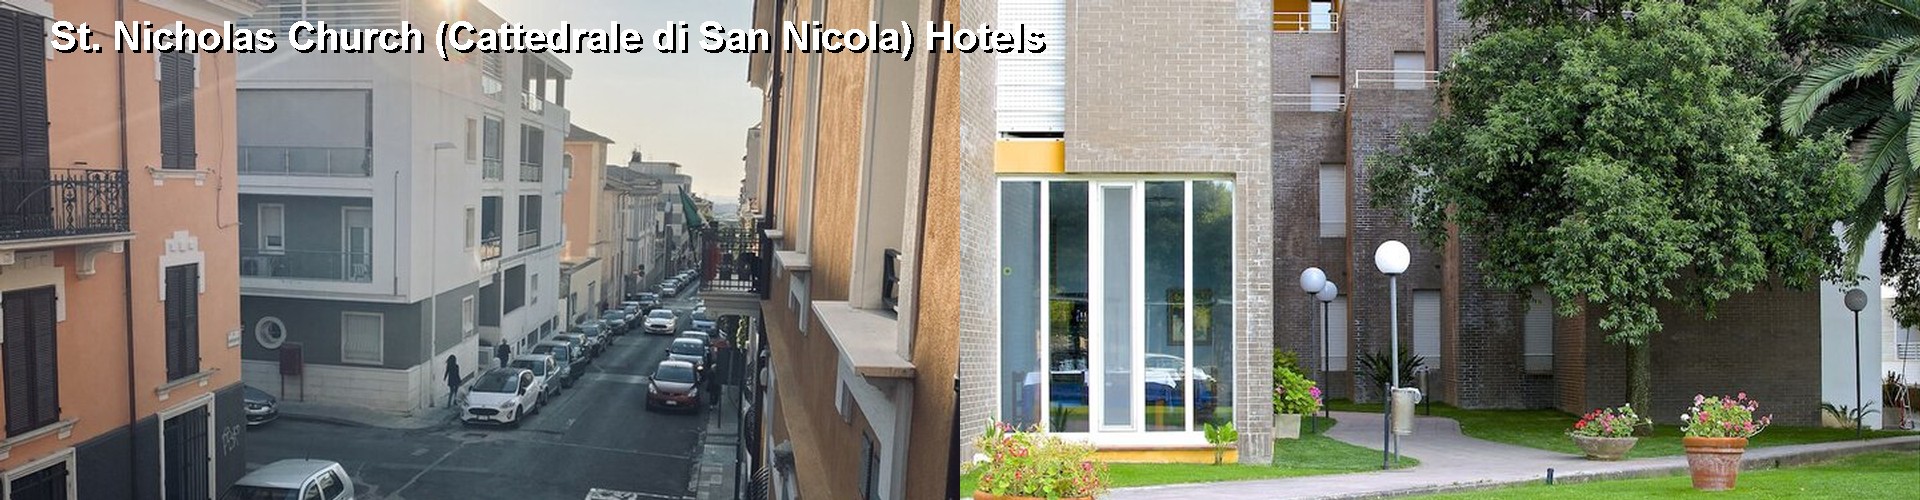 5 Best Hotels near St. Nicholas Church (Cattedrale di San Nicola)